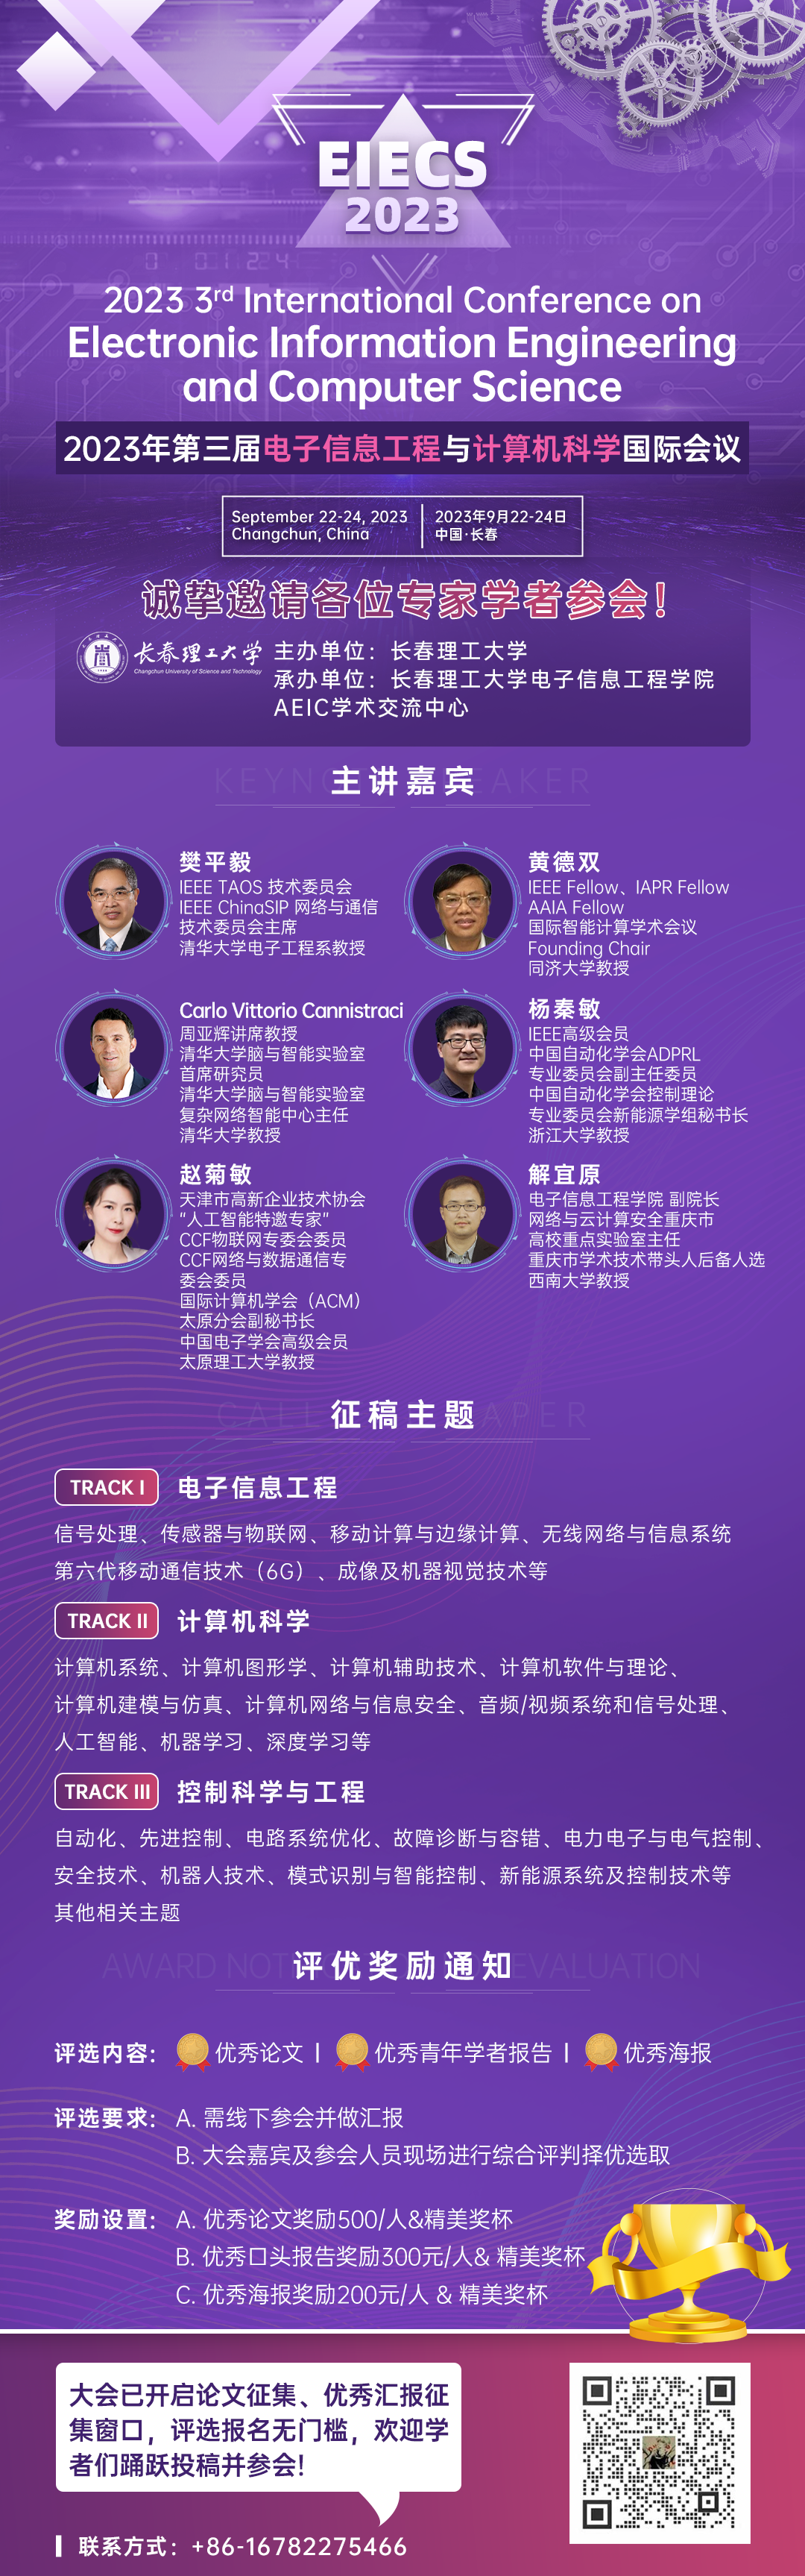 9月广州-EIECS 2023-会议宣传海报-20230509.png